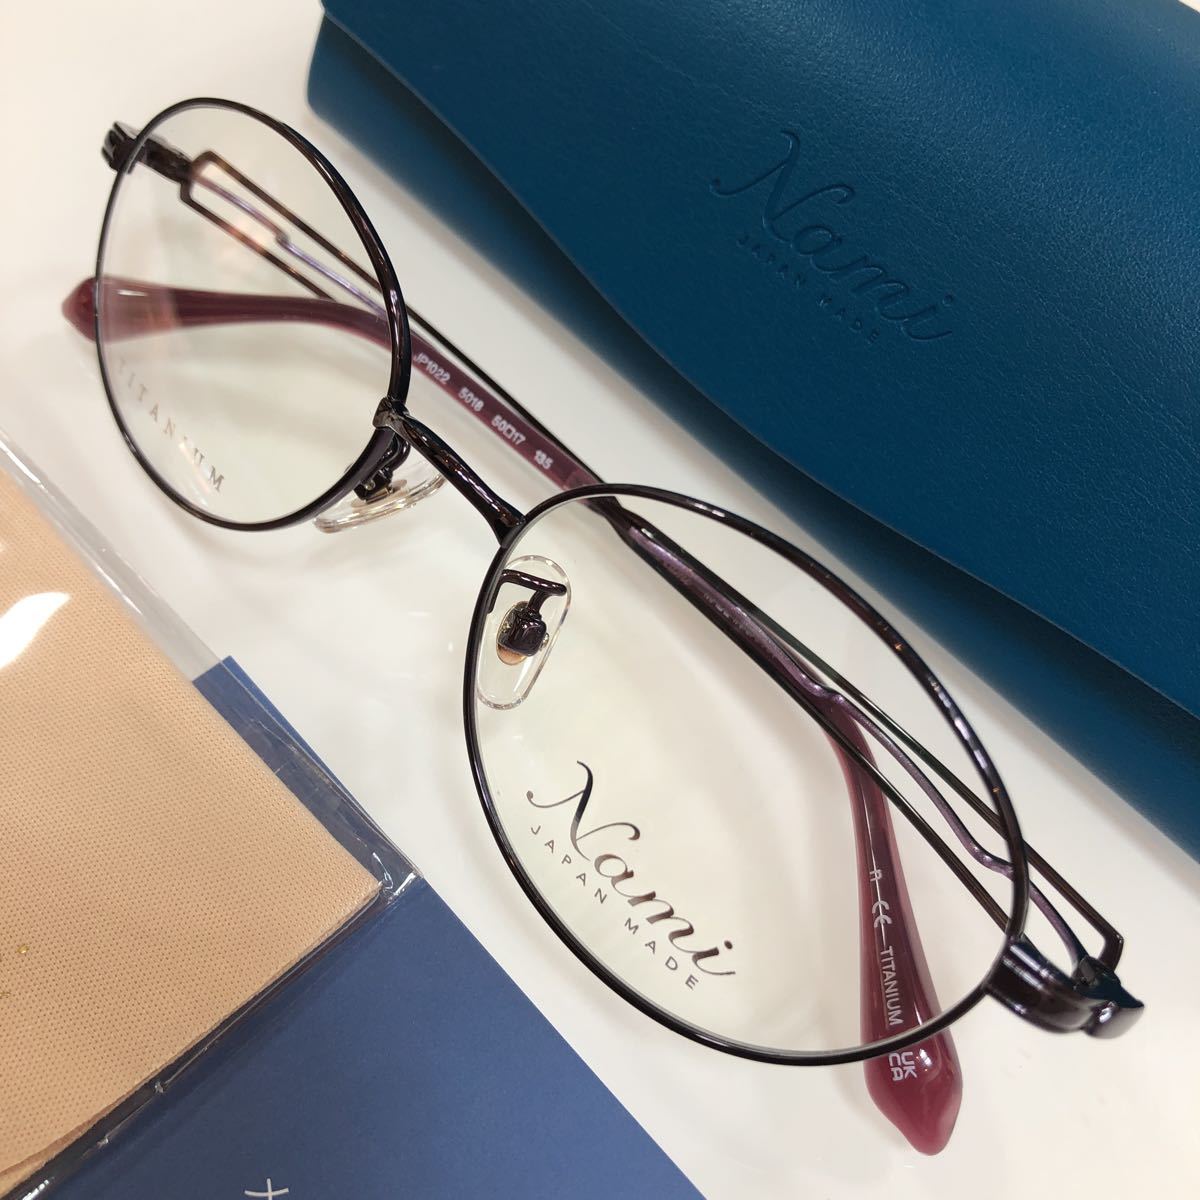 日本製 安心の2年正規保証付き! Nami ナミ JP1022 5018 日本 国産 Made In Japan メガネフレーム メガネ 眼鏡 フレーム JAPAN MADE